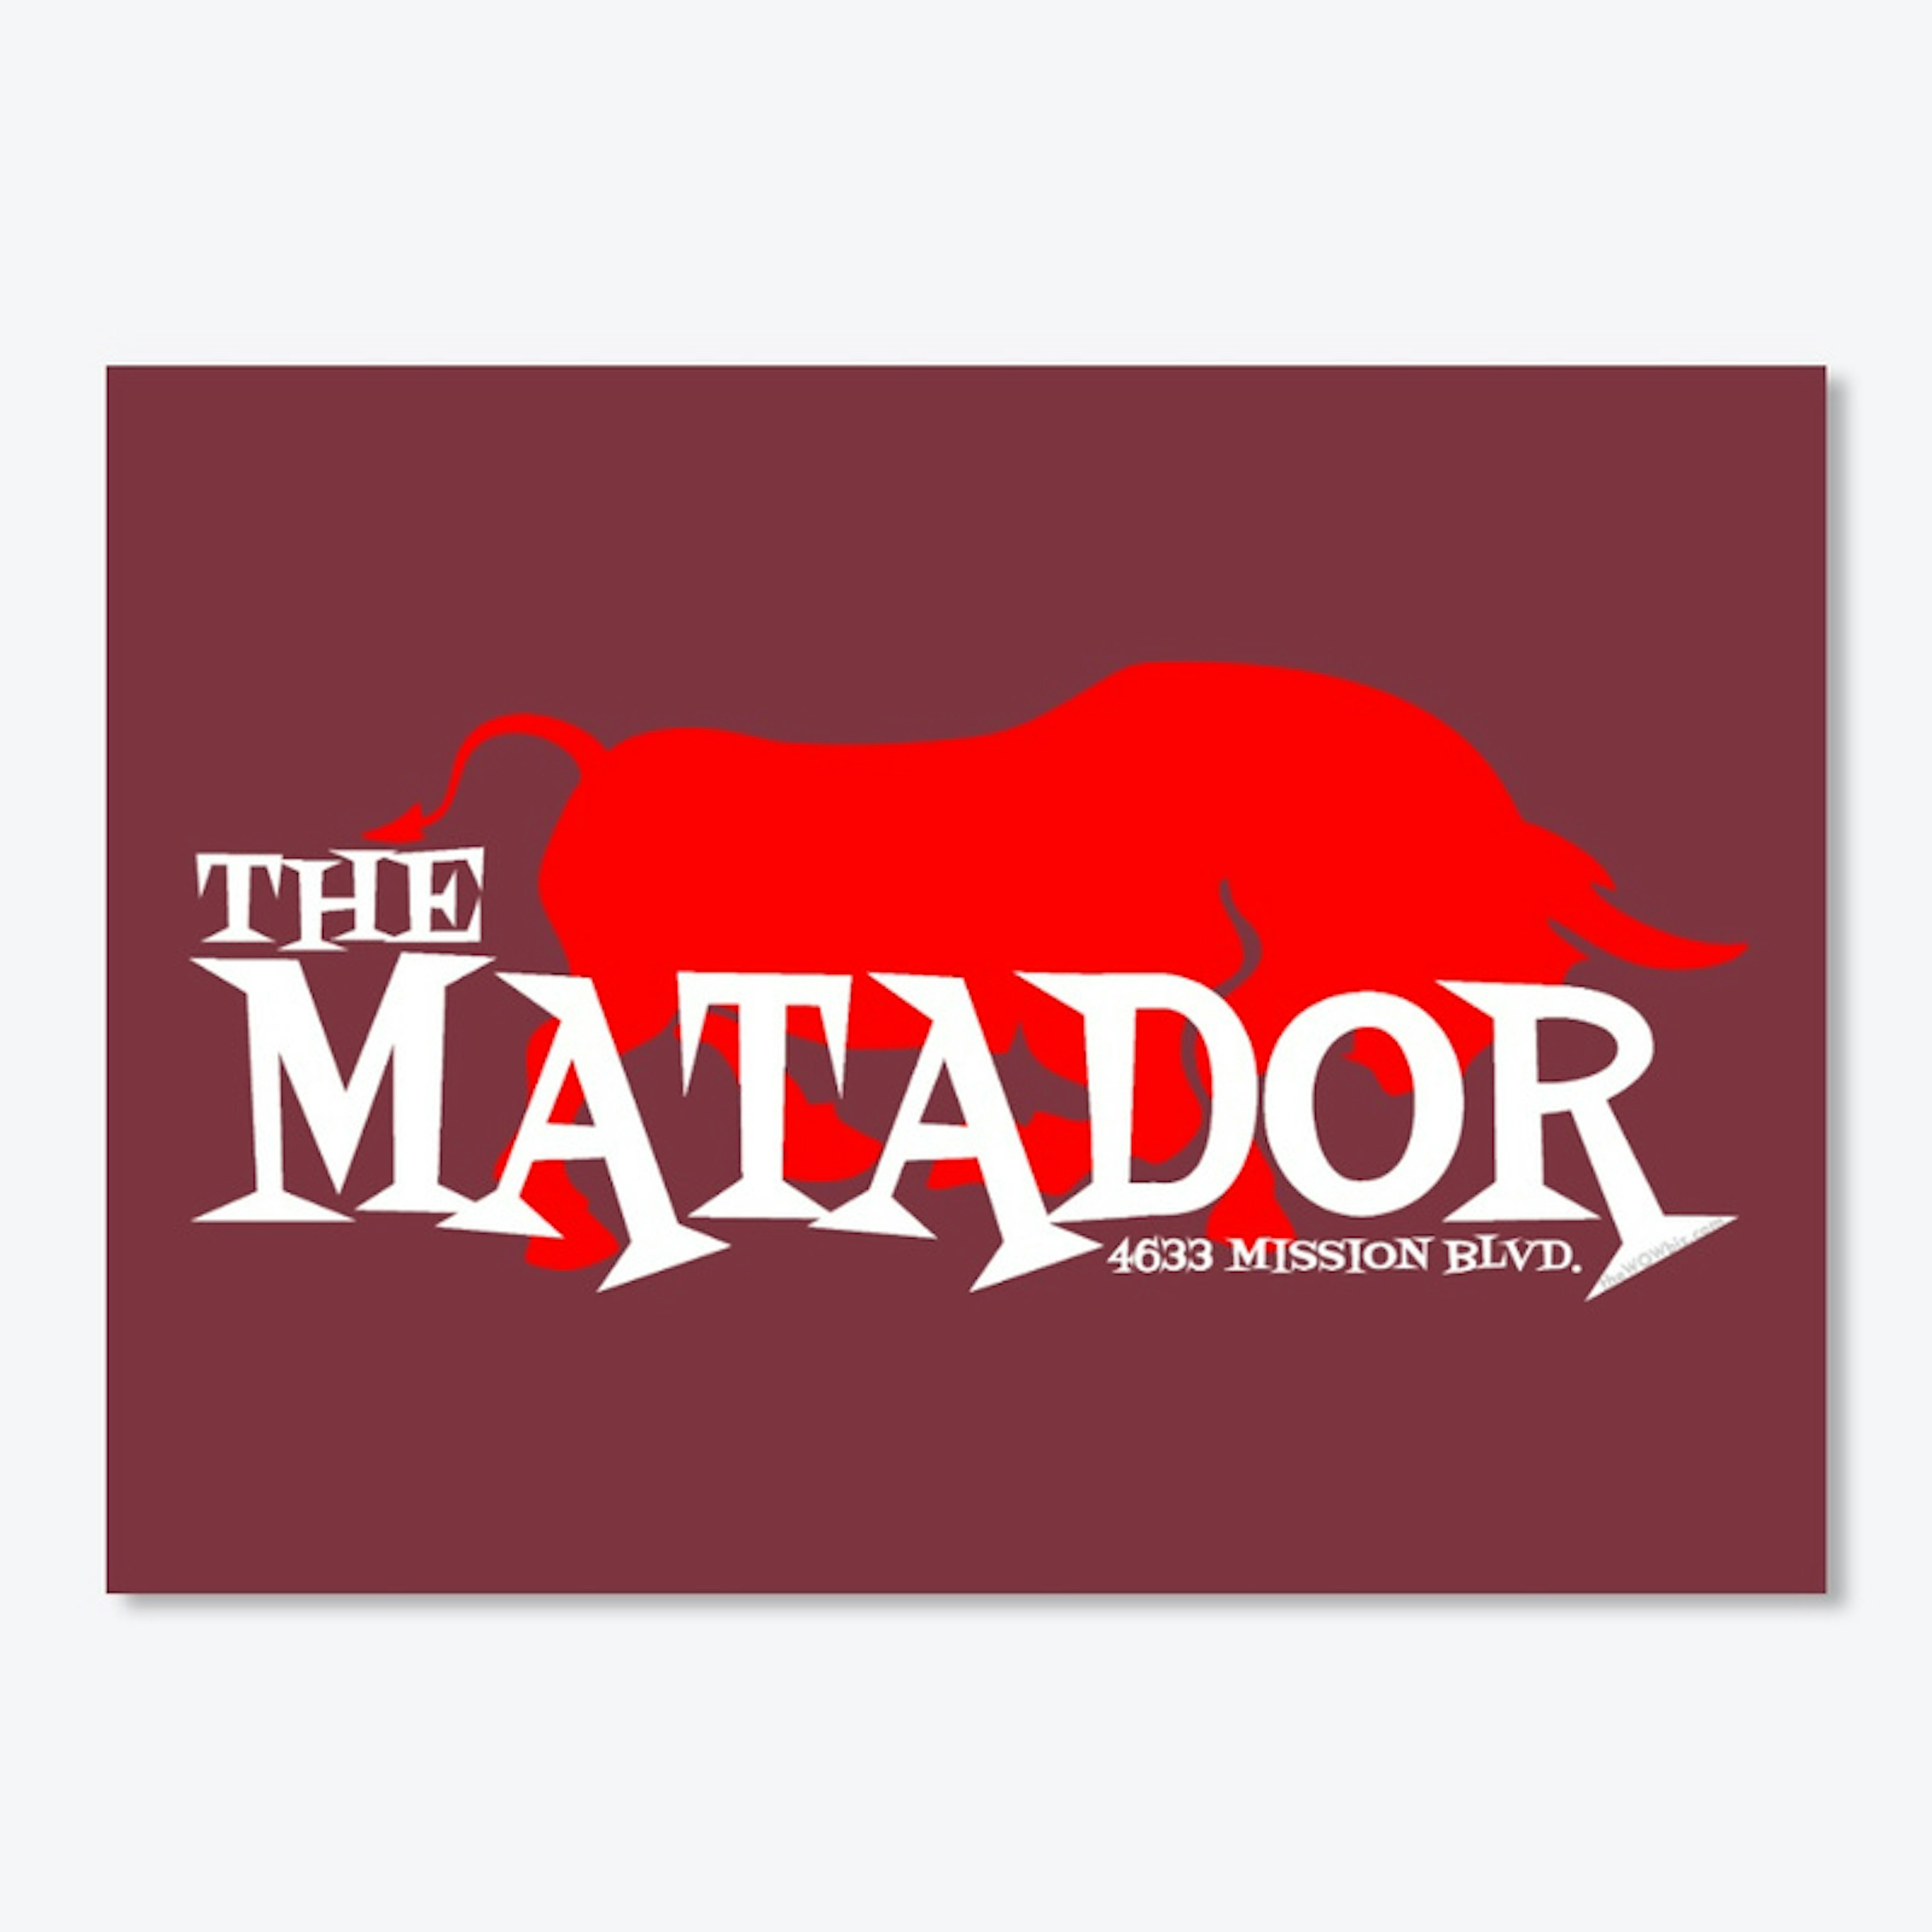 TheMatador